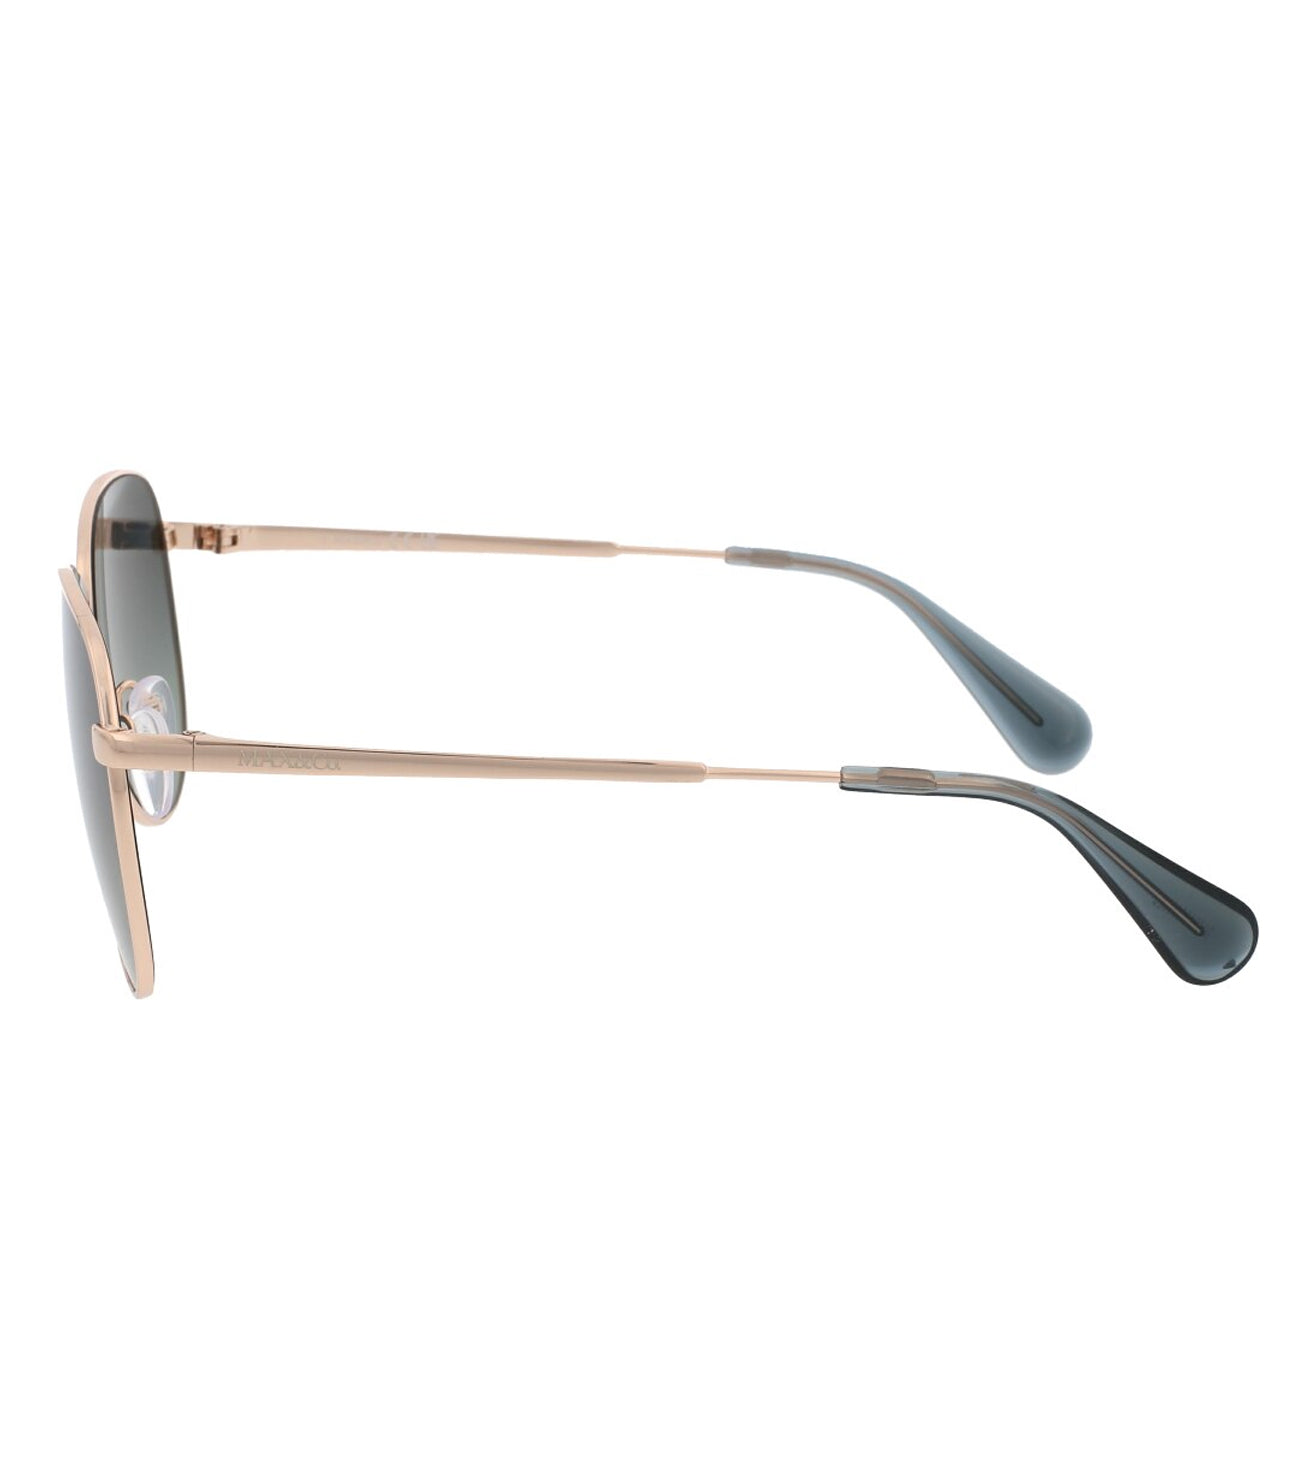 Max Mara Women's Grey Gradient Aviator Sunglasses